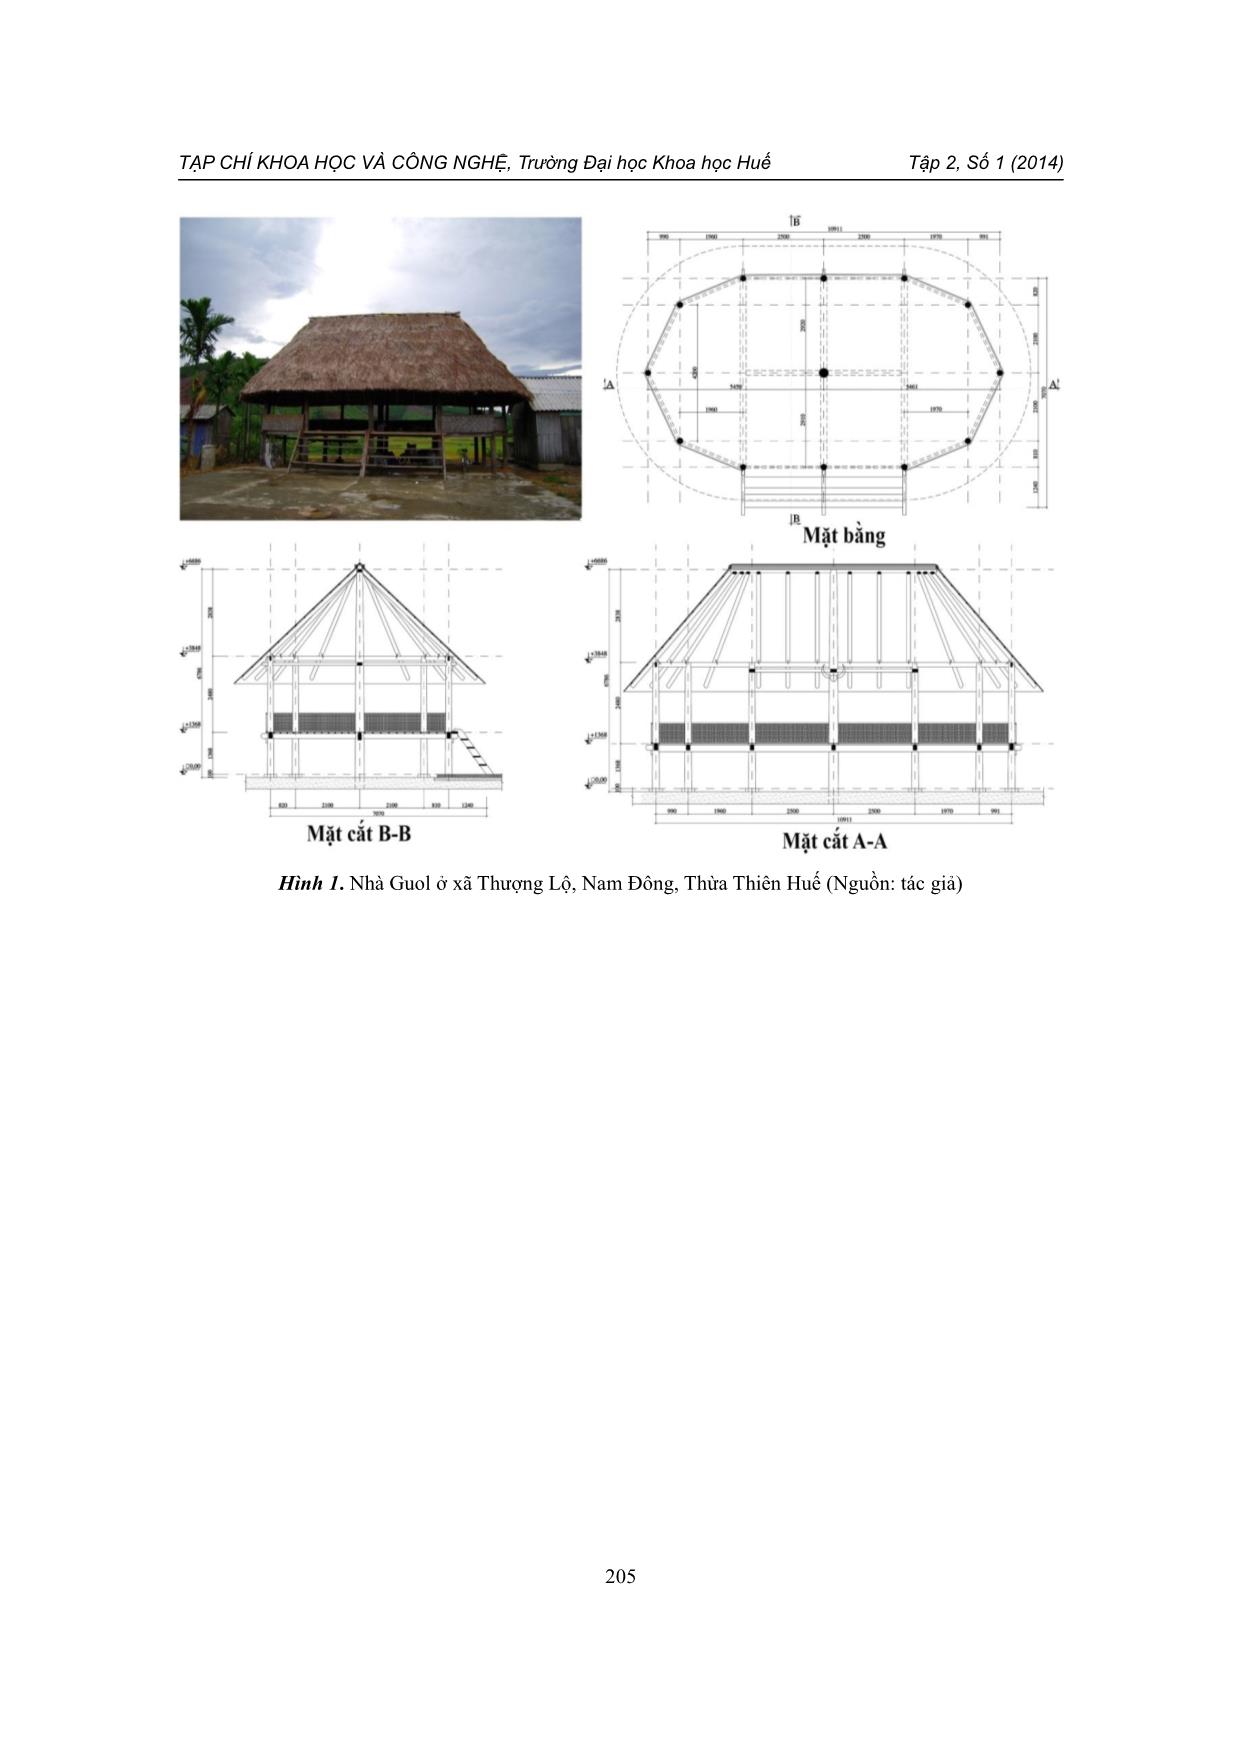 Kiến trúc nhà Guol và phương pháp xây dựng bằng kích thước cơ thể của người cơ tu trang 3